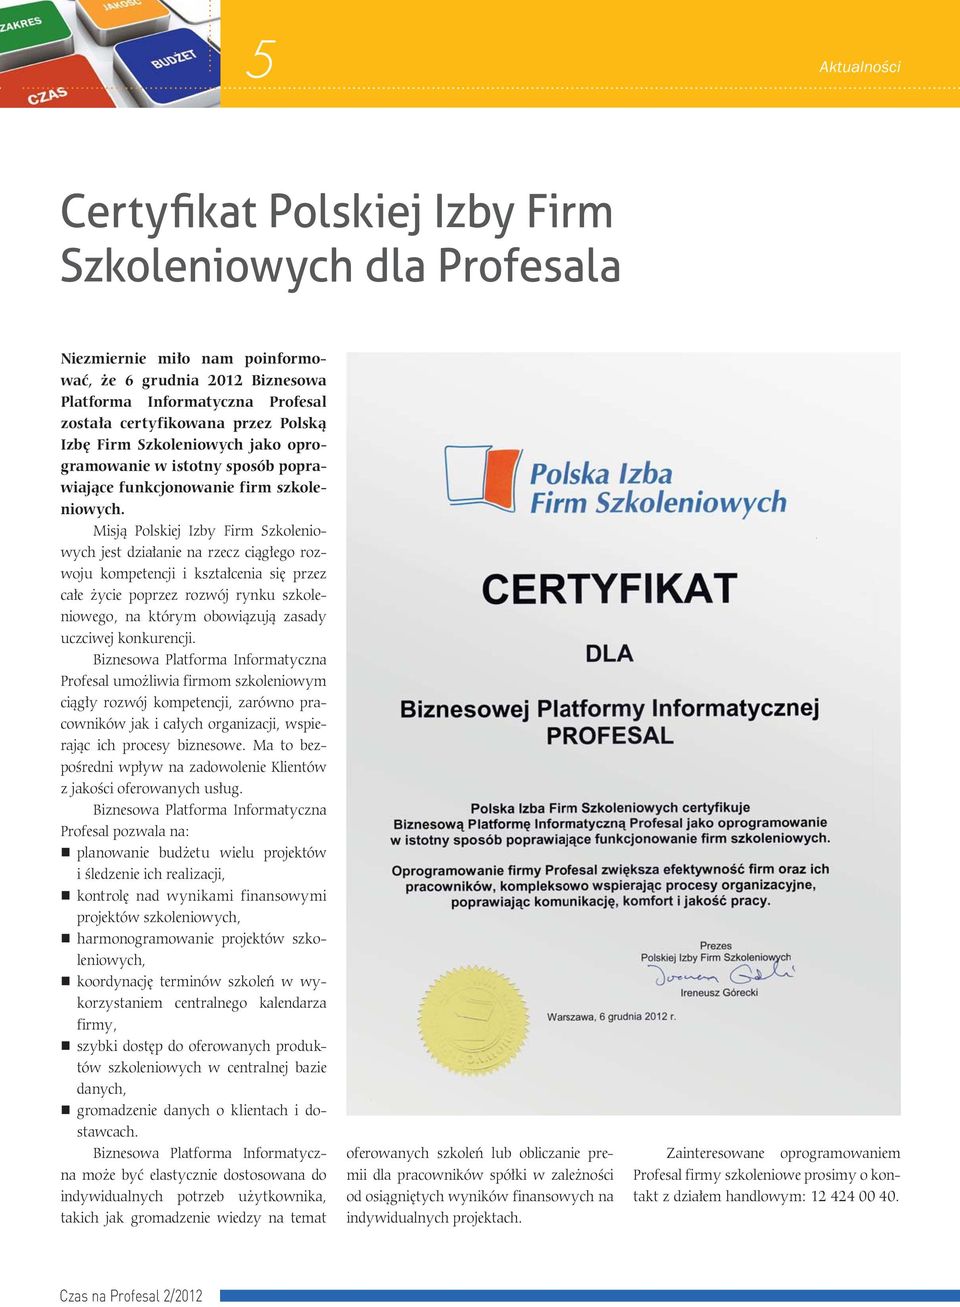 Misją Polskiej Izby Firm Szkoleniowych jest działanie na rzecz ciągłego rozwoju kompetencji i kształcenia się przez całe życie poprzez rozwój rynku szkoleniowego, na którym obowiązują zasady uczciwej